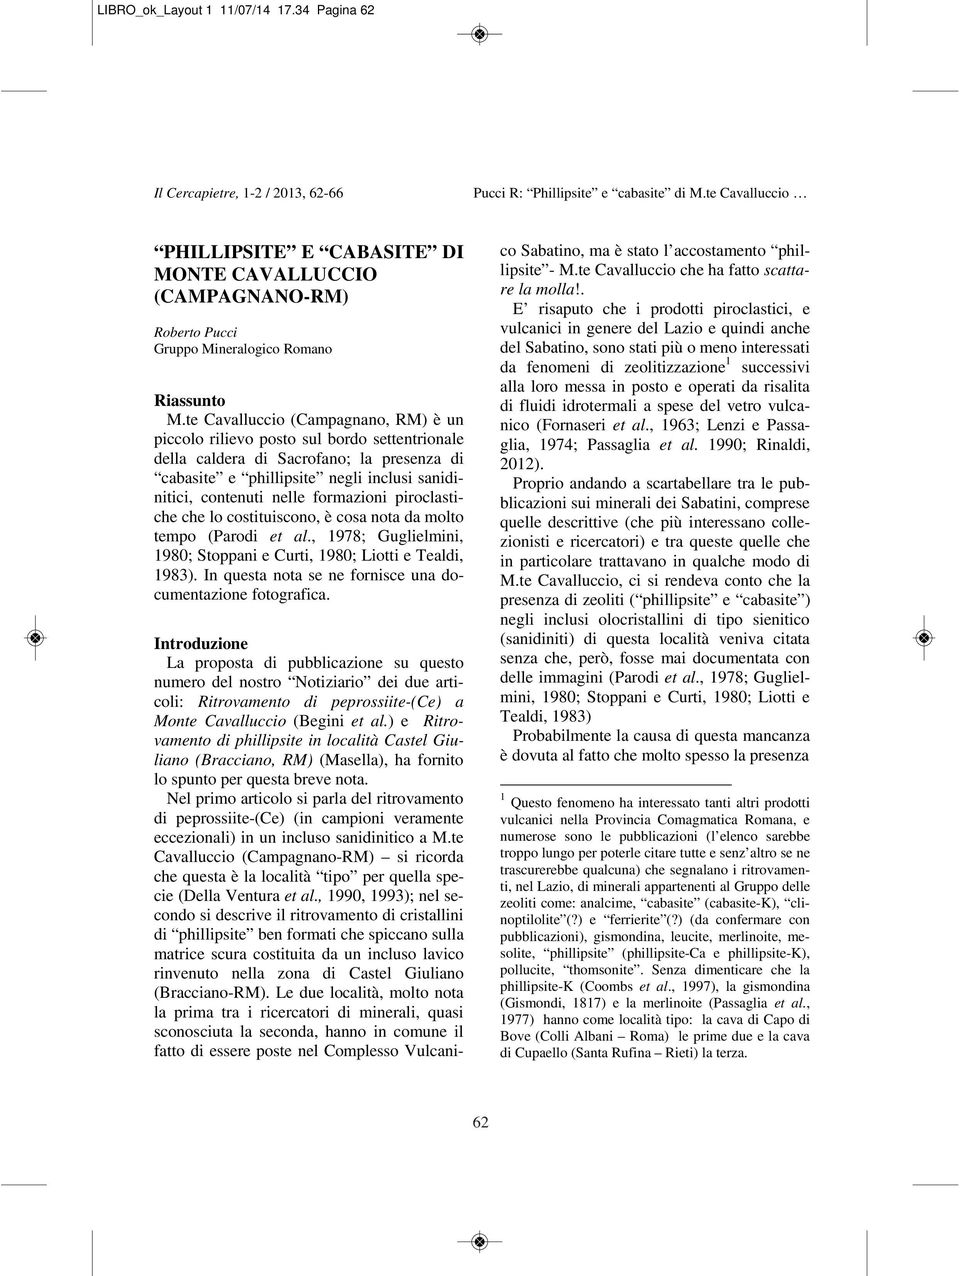 formazioni piroclastiche che lo costituiscono, è cosa nota da molto tempo (Parodi et al., 1978; Guglielmini, 1980; Stoppani e Curti, 1980; Liotti e Tealdi, 1983).